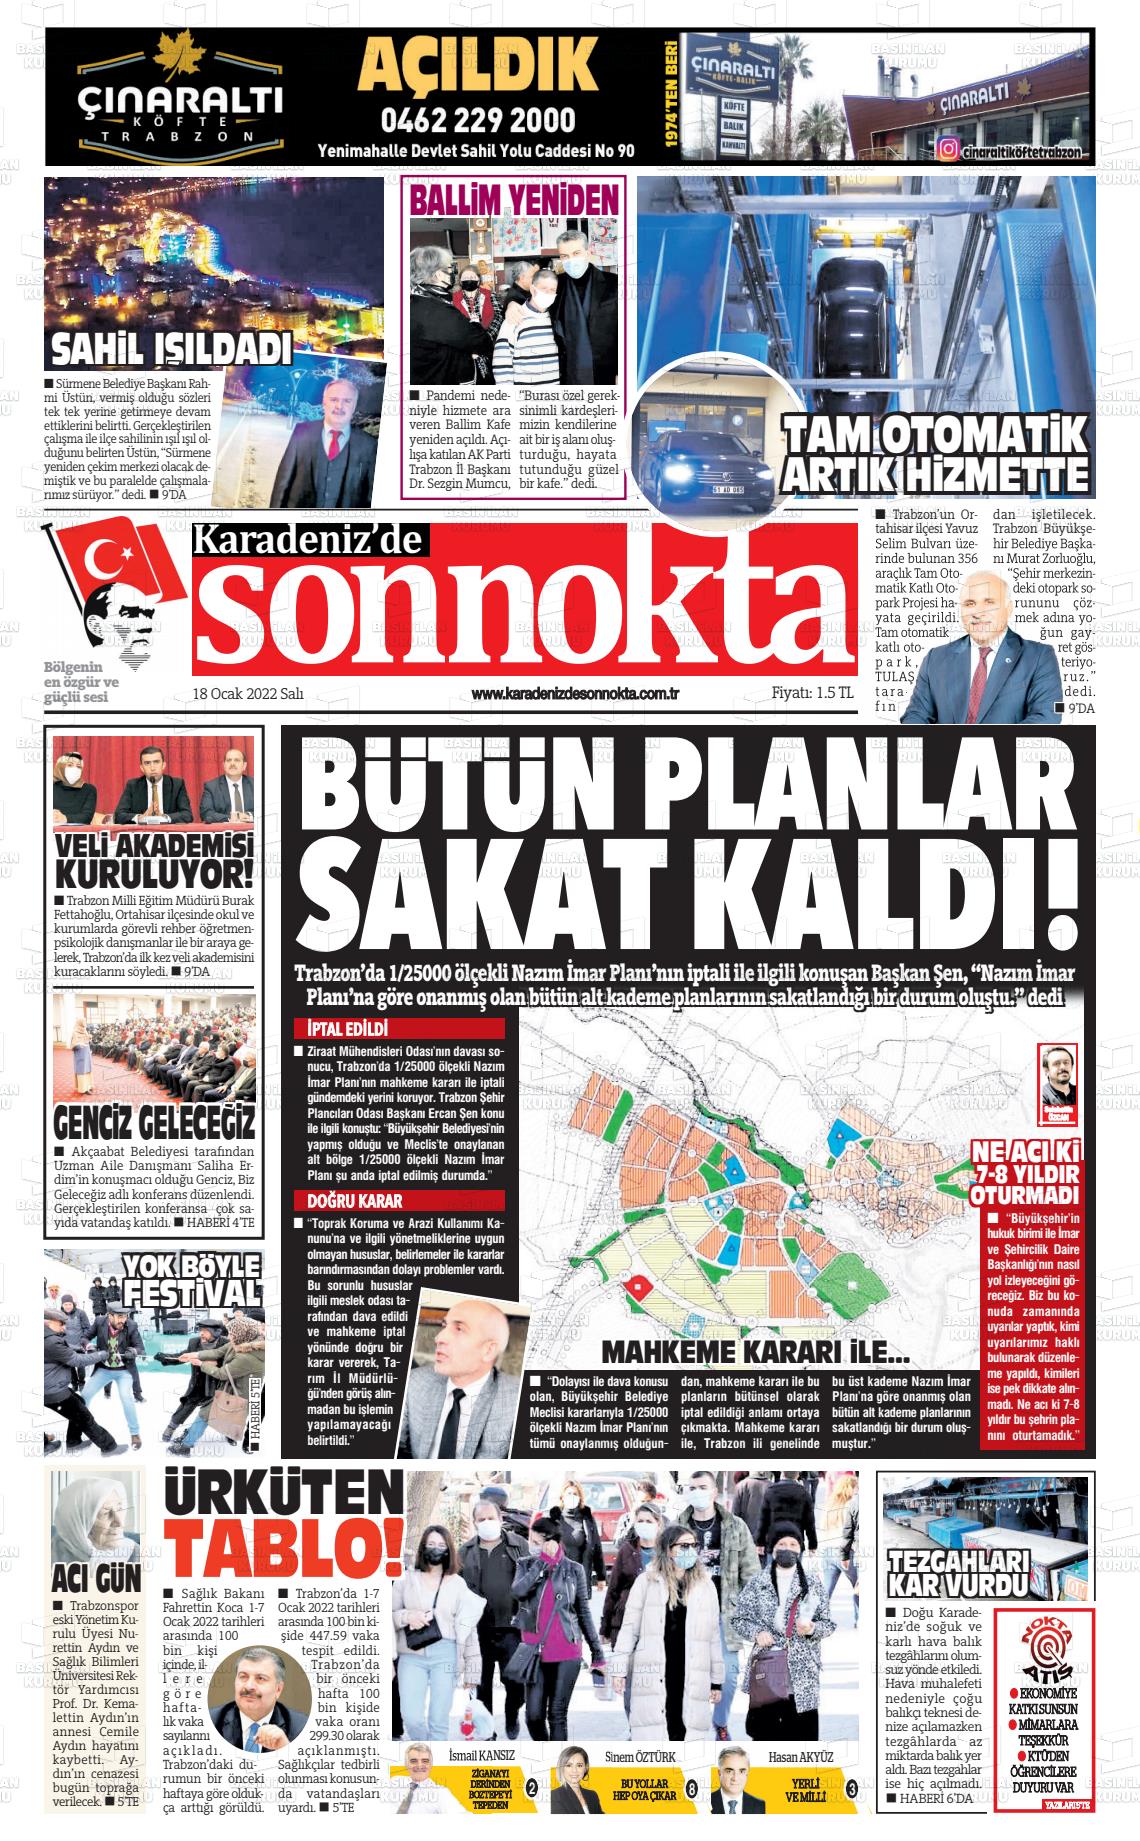 18 Ocak 2022 Karadeniz'de Sonnokta Gazete Manşeti